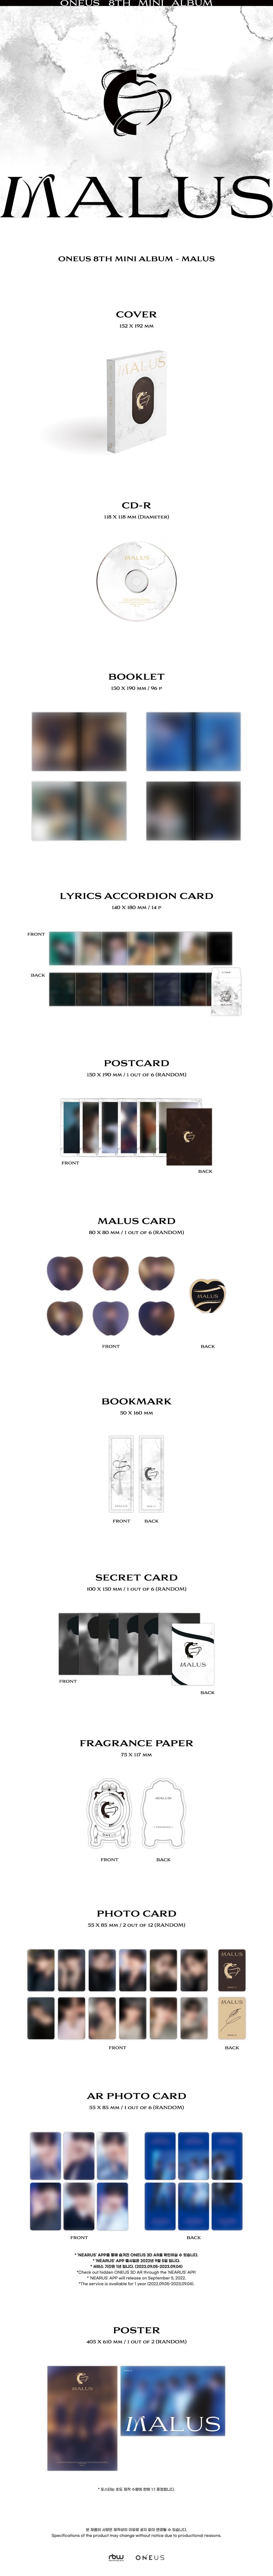 ONEUS - MALUS (Main ver.) - 8th Mini Album